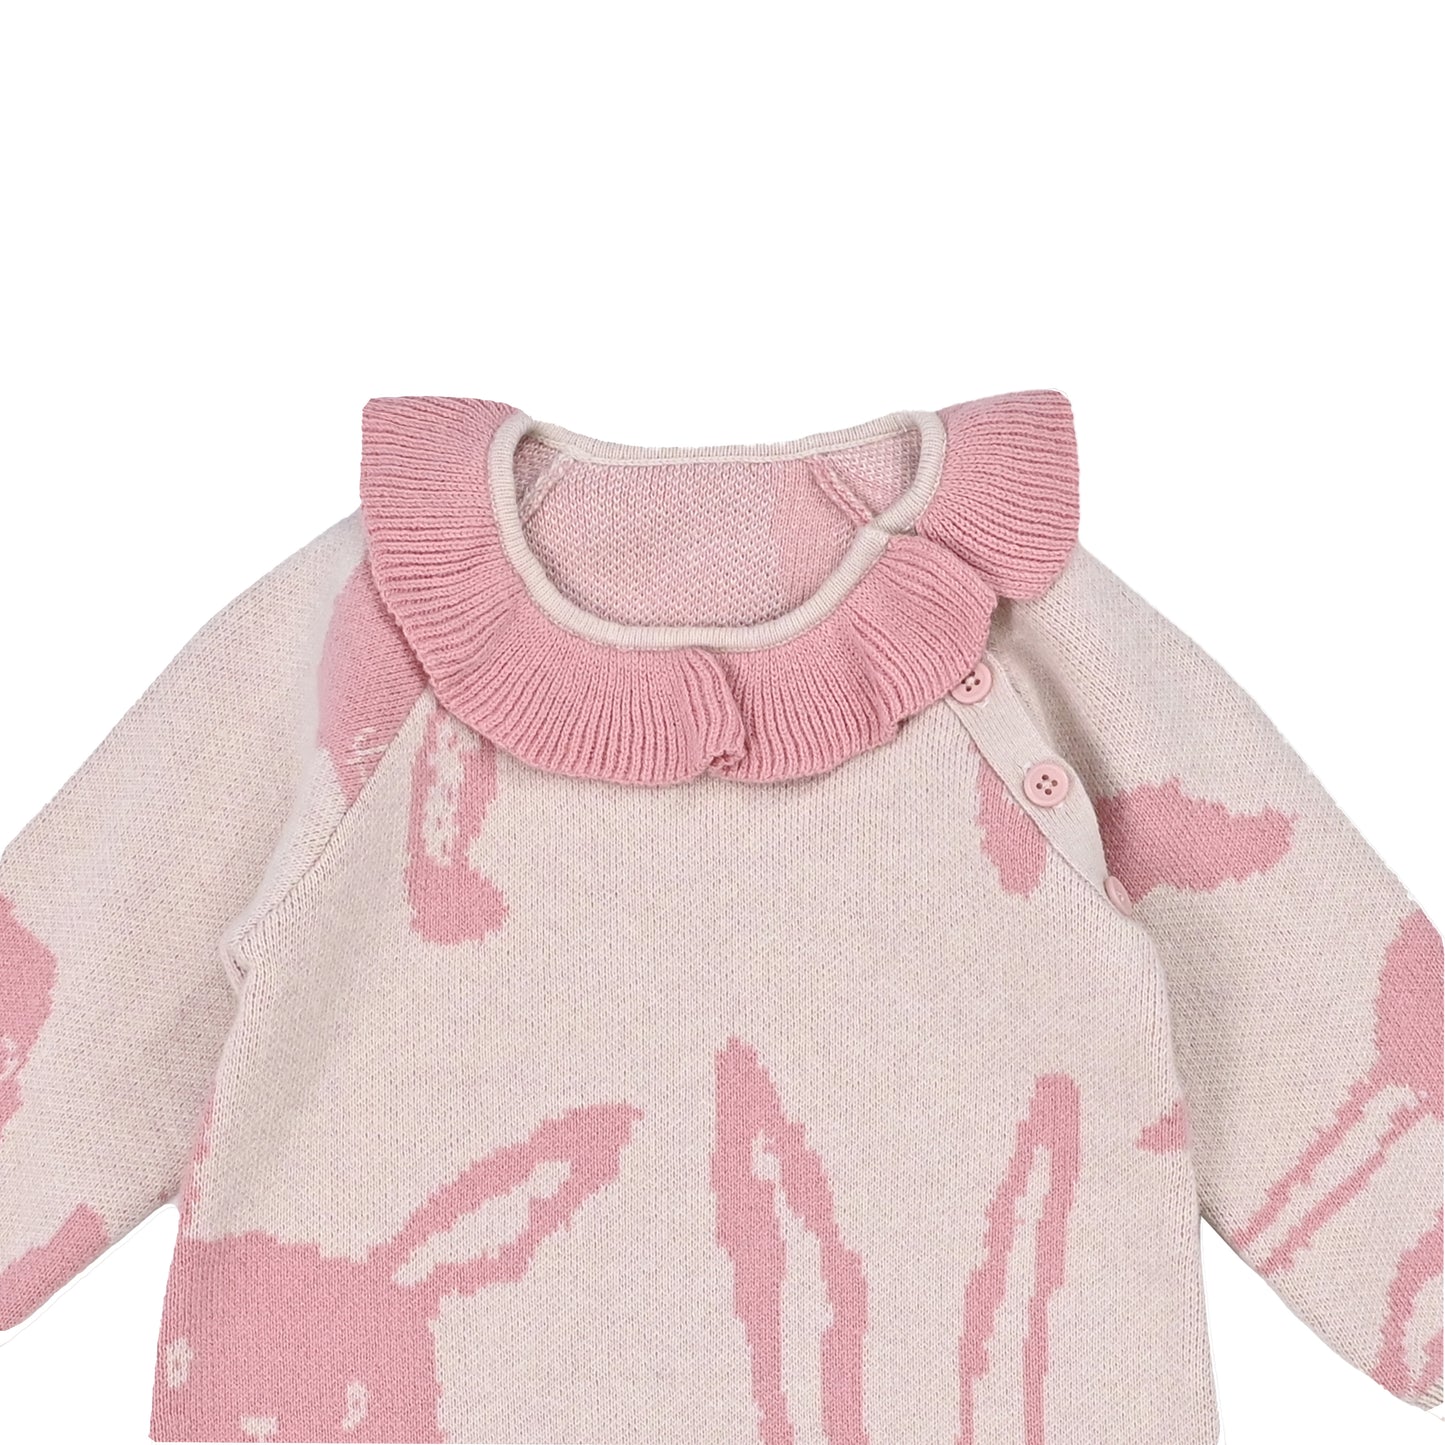 嬰兒衣服 - 白兔圖案荷葉領羊絨混棉長袖連體衣